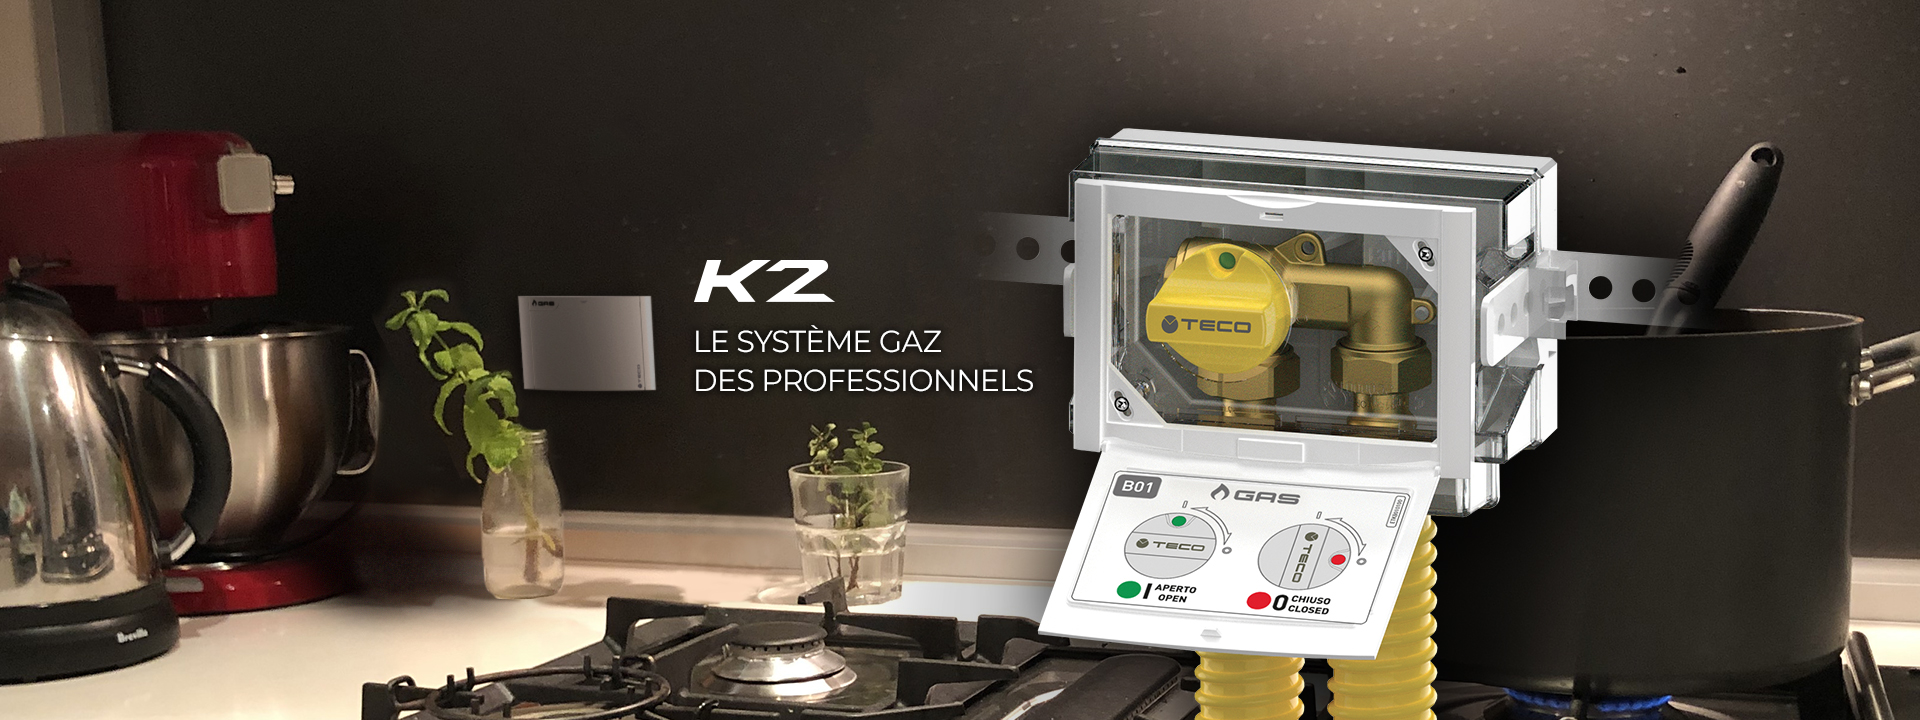 Teco K2: le systeme gaz des professionnels